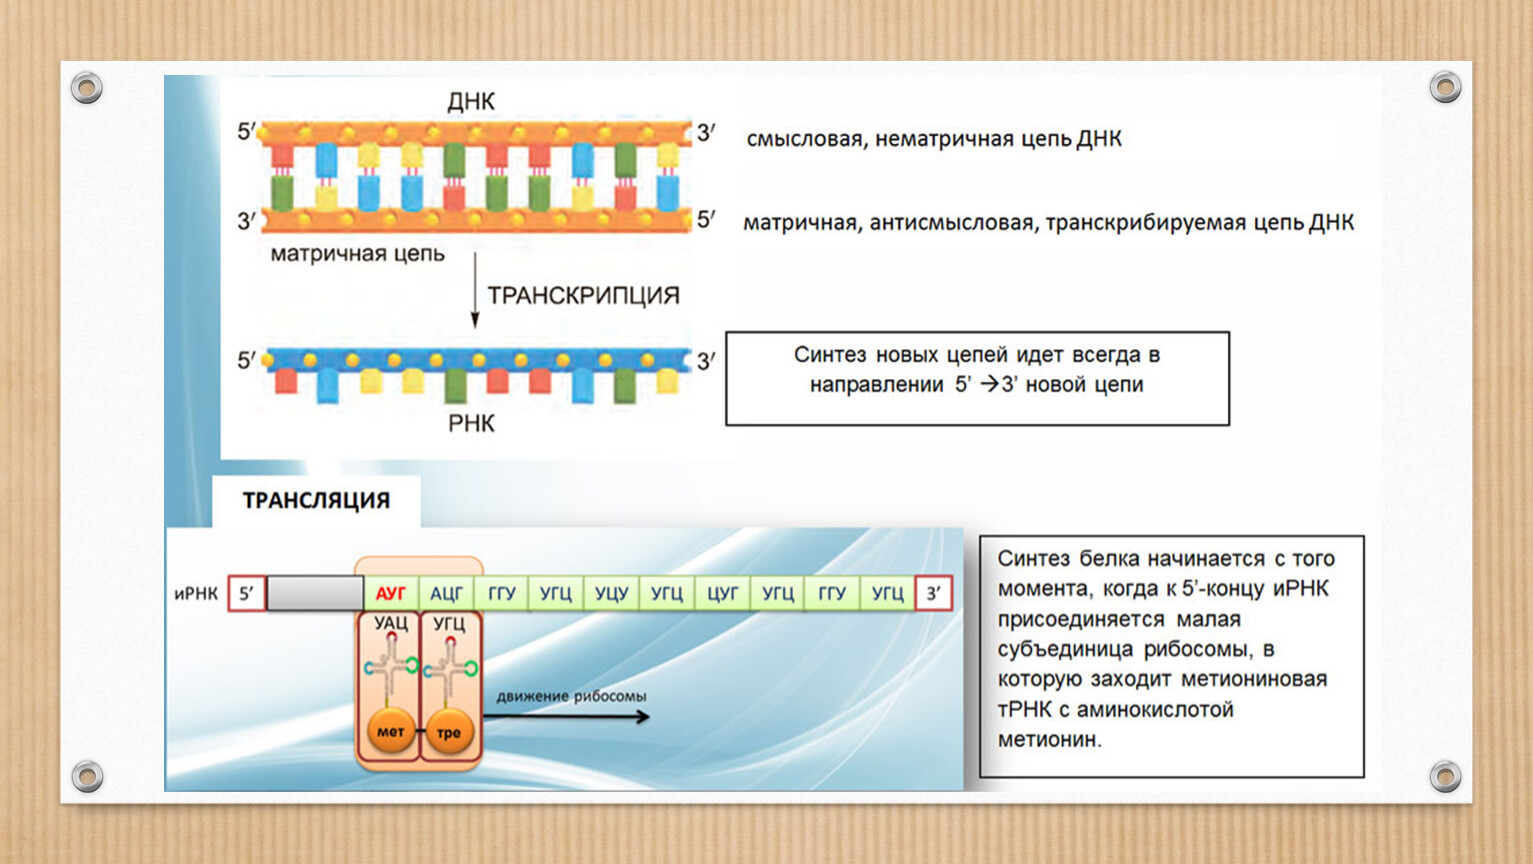 Смысловая цепь днк это. Биосинтез белка подготовка к ЕГЭ. Смысловая и транскрибируемая цепь. Верхняя цепь смысловая, нижняя транскрибируемая. Смысловая цепь ДНК.